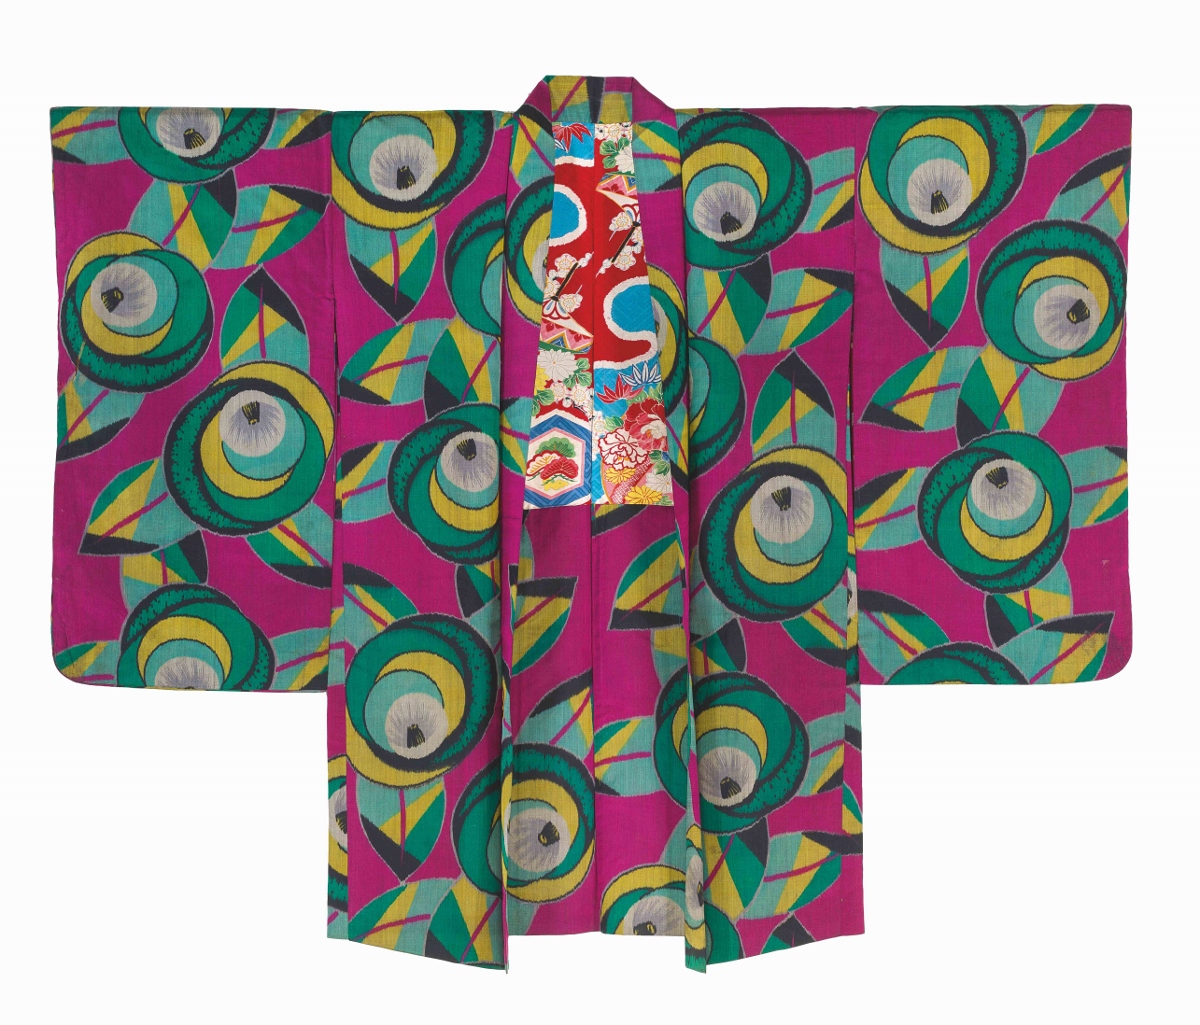 Kimono. Riflessi d’arte tra Giappone e Occidente